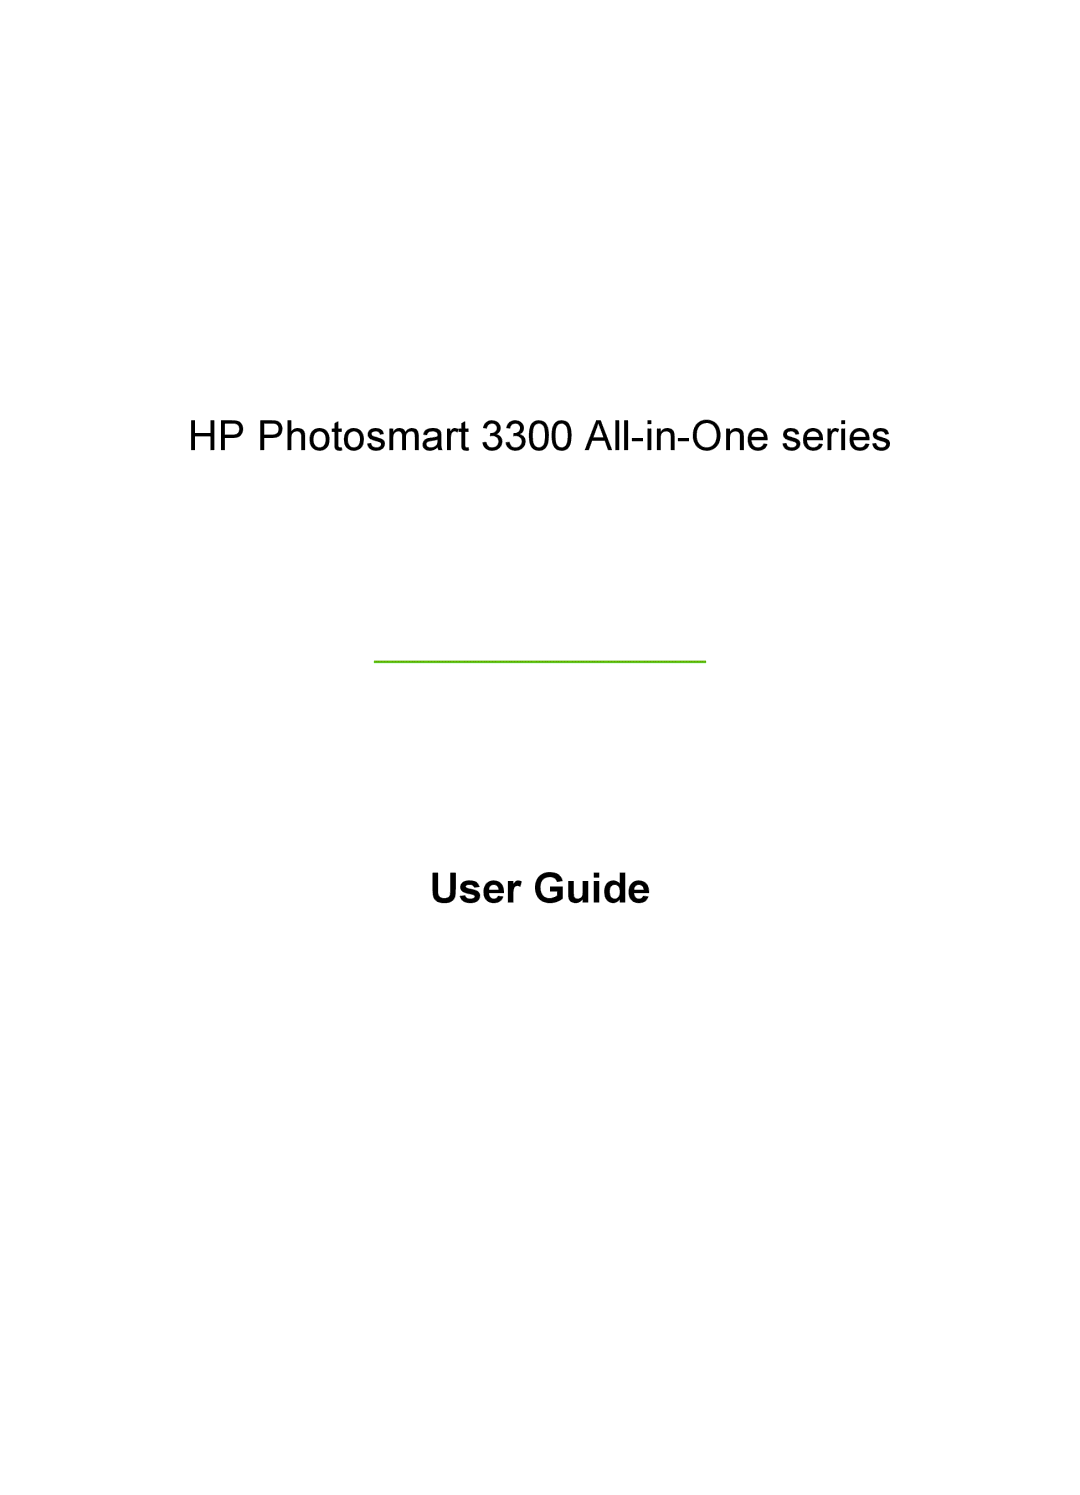 HP 3300 manual User Guide 